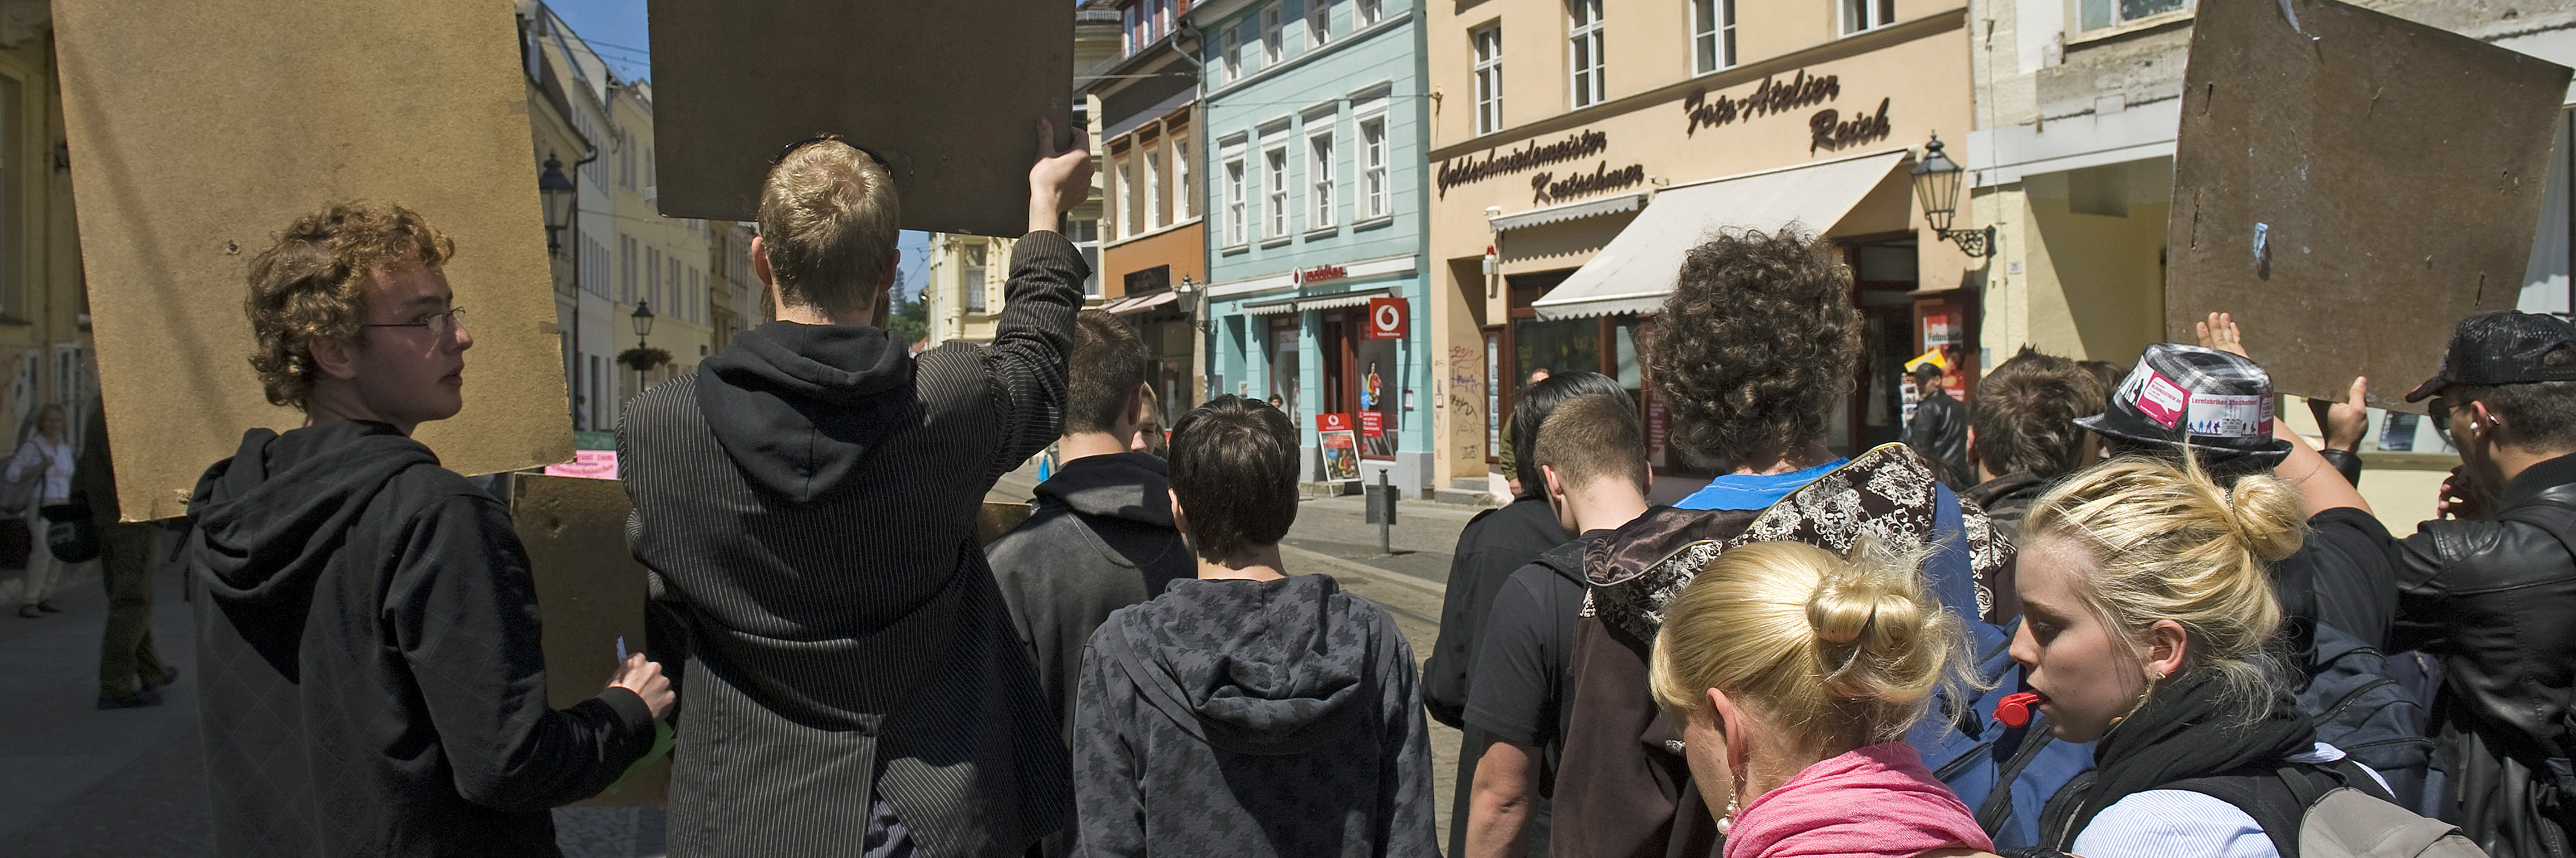 Schüler kritisch unterwegs in Brandenburg an der Havel